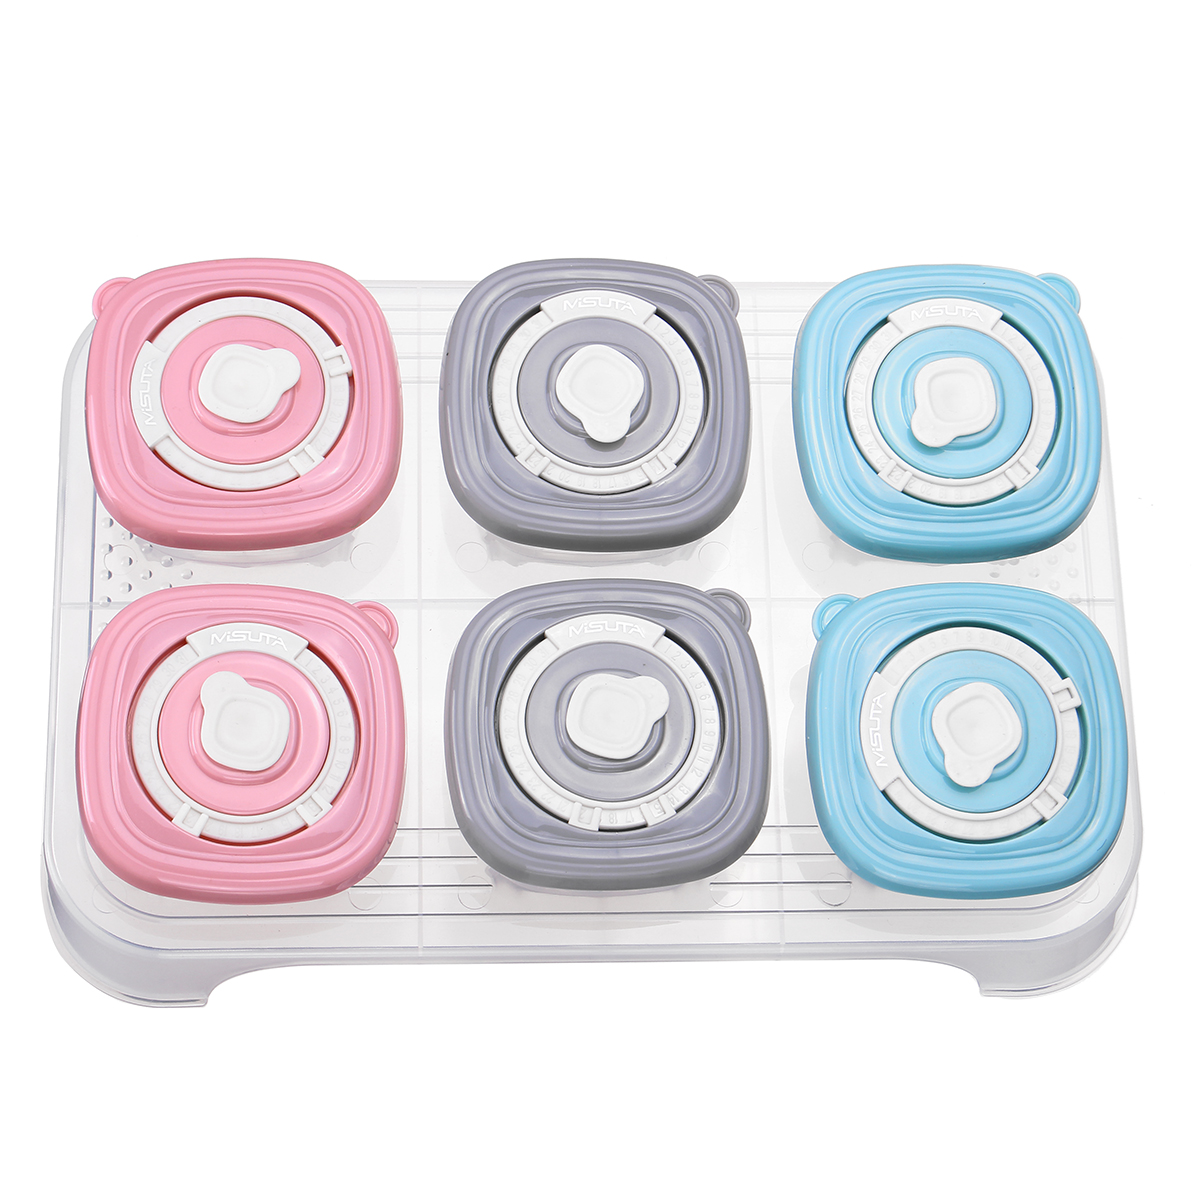 6 Pcs Portable Conteneur De Stockage Des Aliments Pour Bebe Toddler Kid Formule Lait Complement Alimentaire Vaisselle Vaisselle